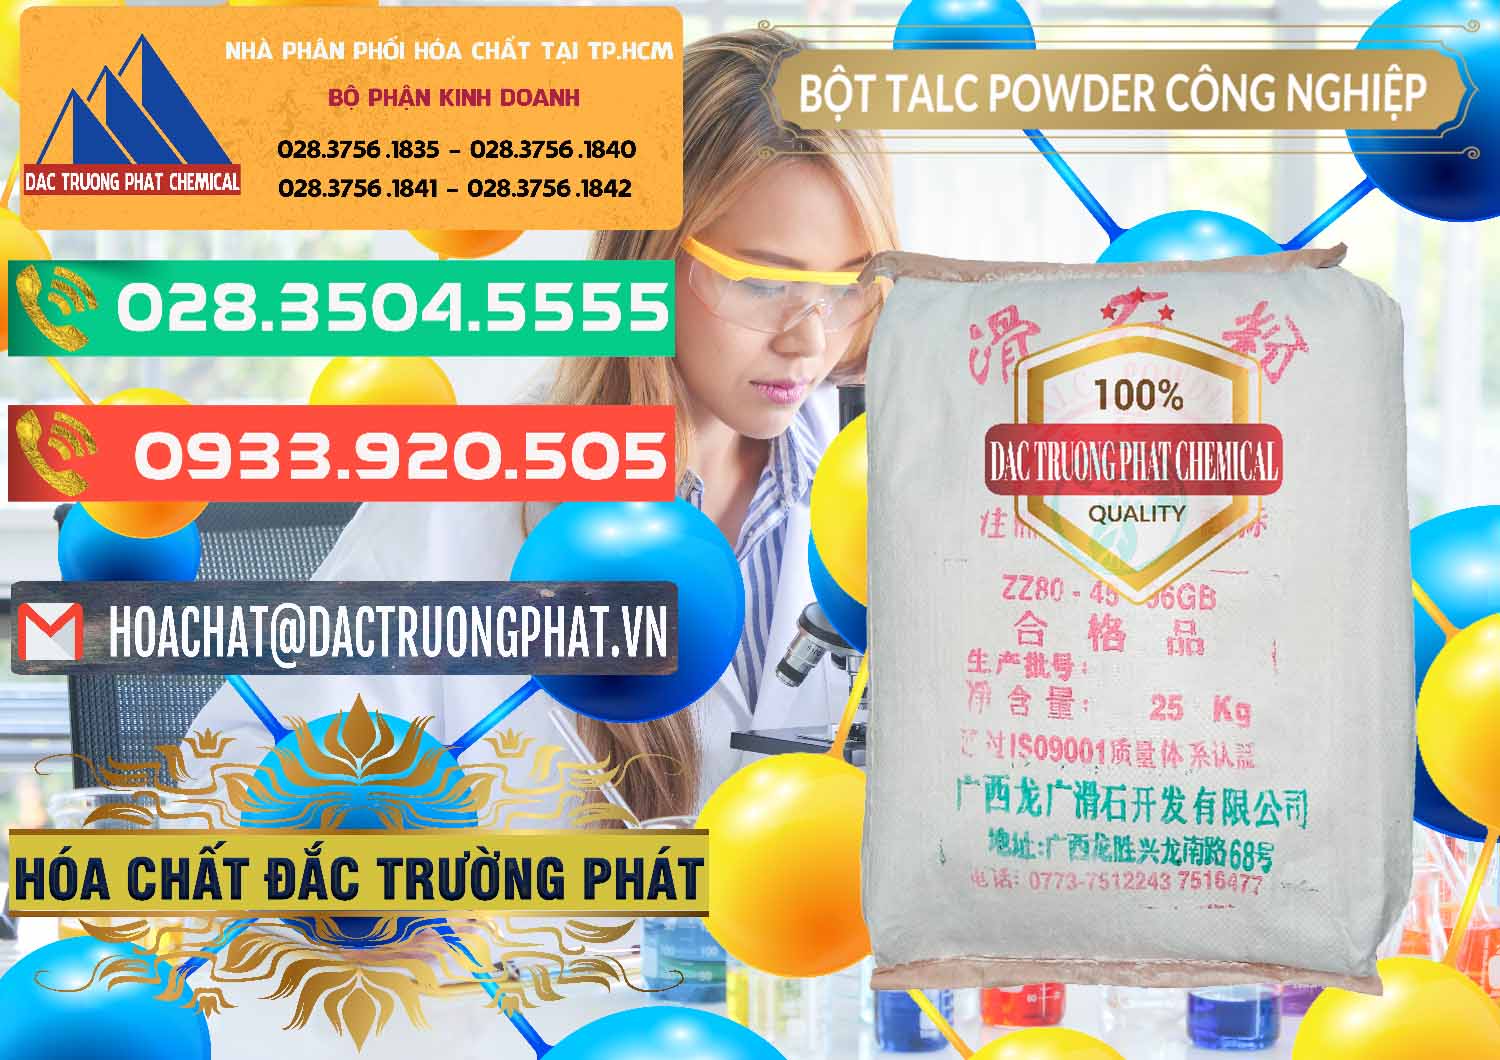 Chuyên cung ứng - bán Bột Talc Powder Công Nghiệp Trung Quốc China - 0037 - Cty chuyên kinh doanh và cung cấp hóa chất tại TP.HCM - congtyhoachat.com.vn